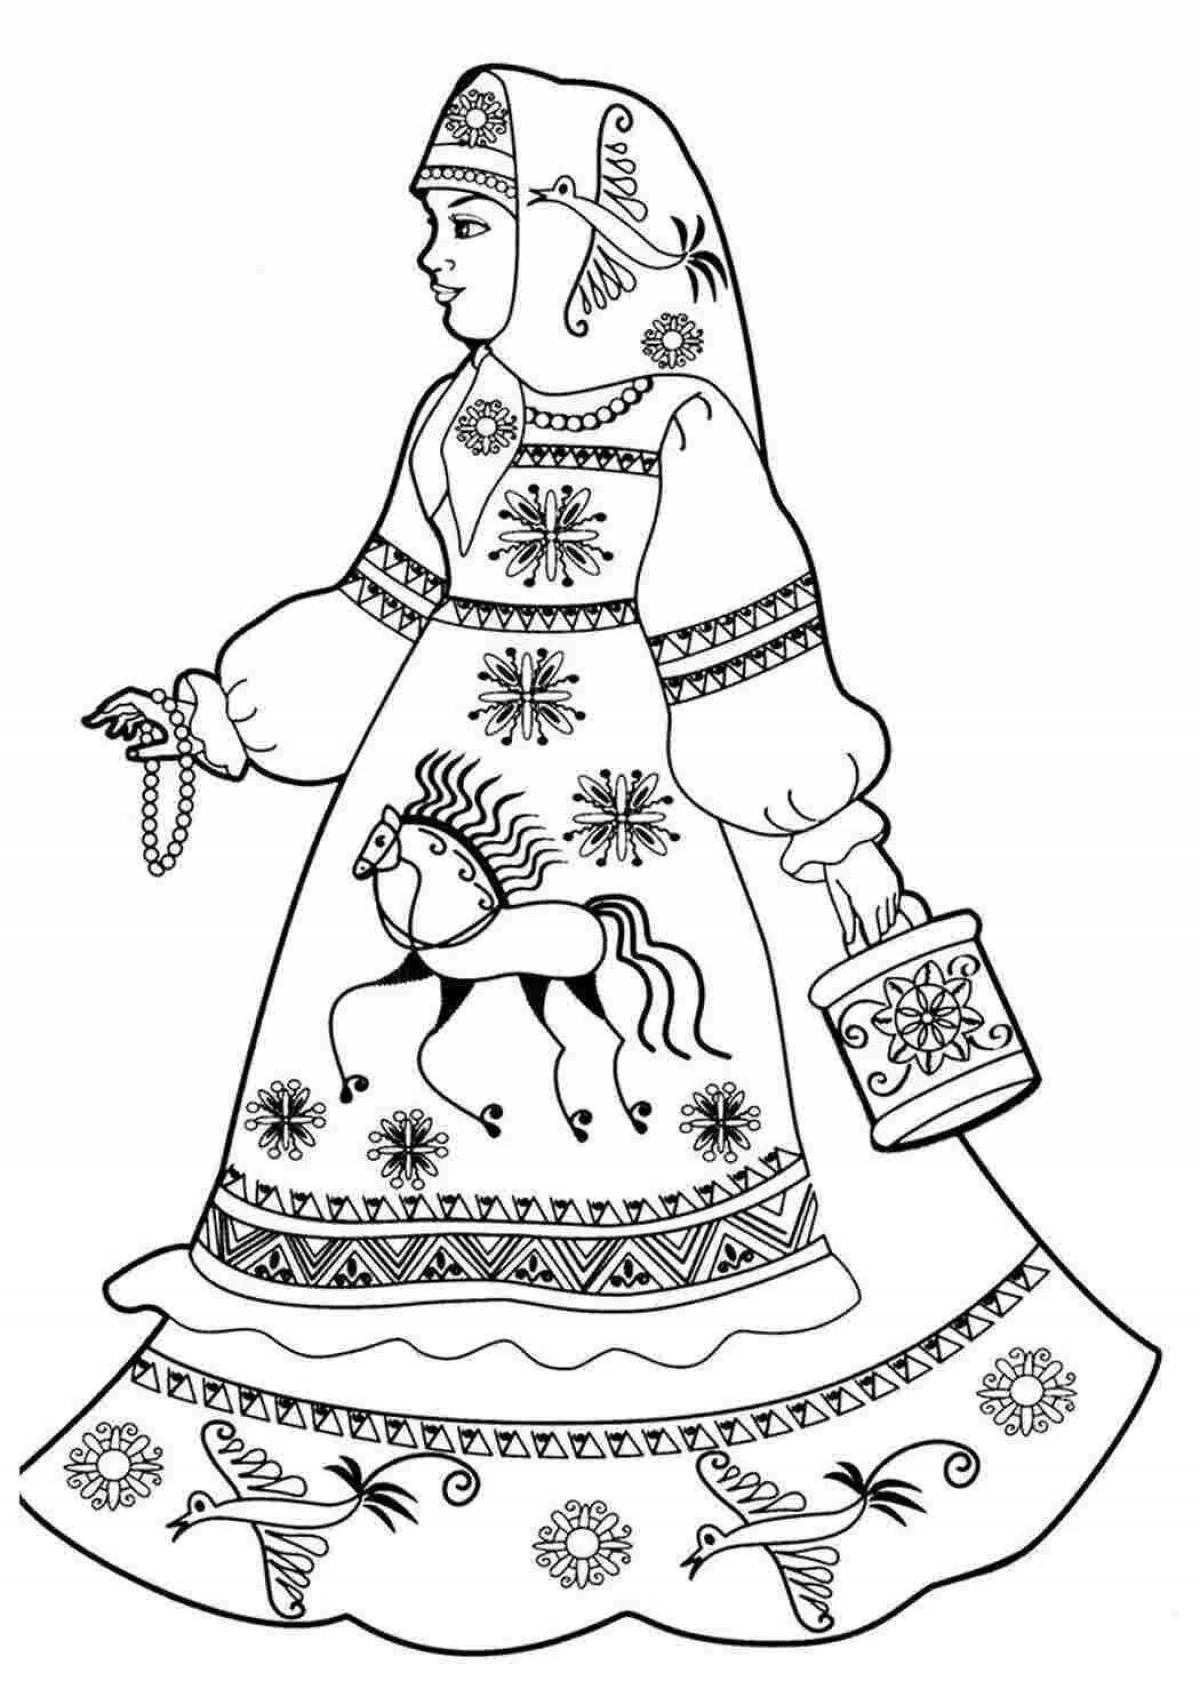 Russian folk costume for children #1